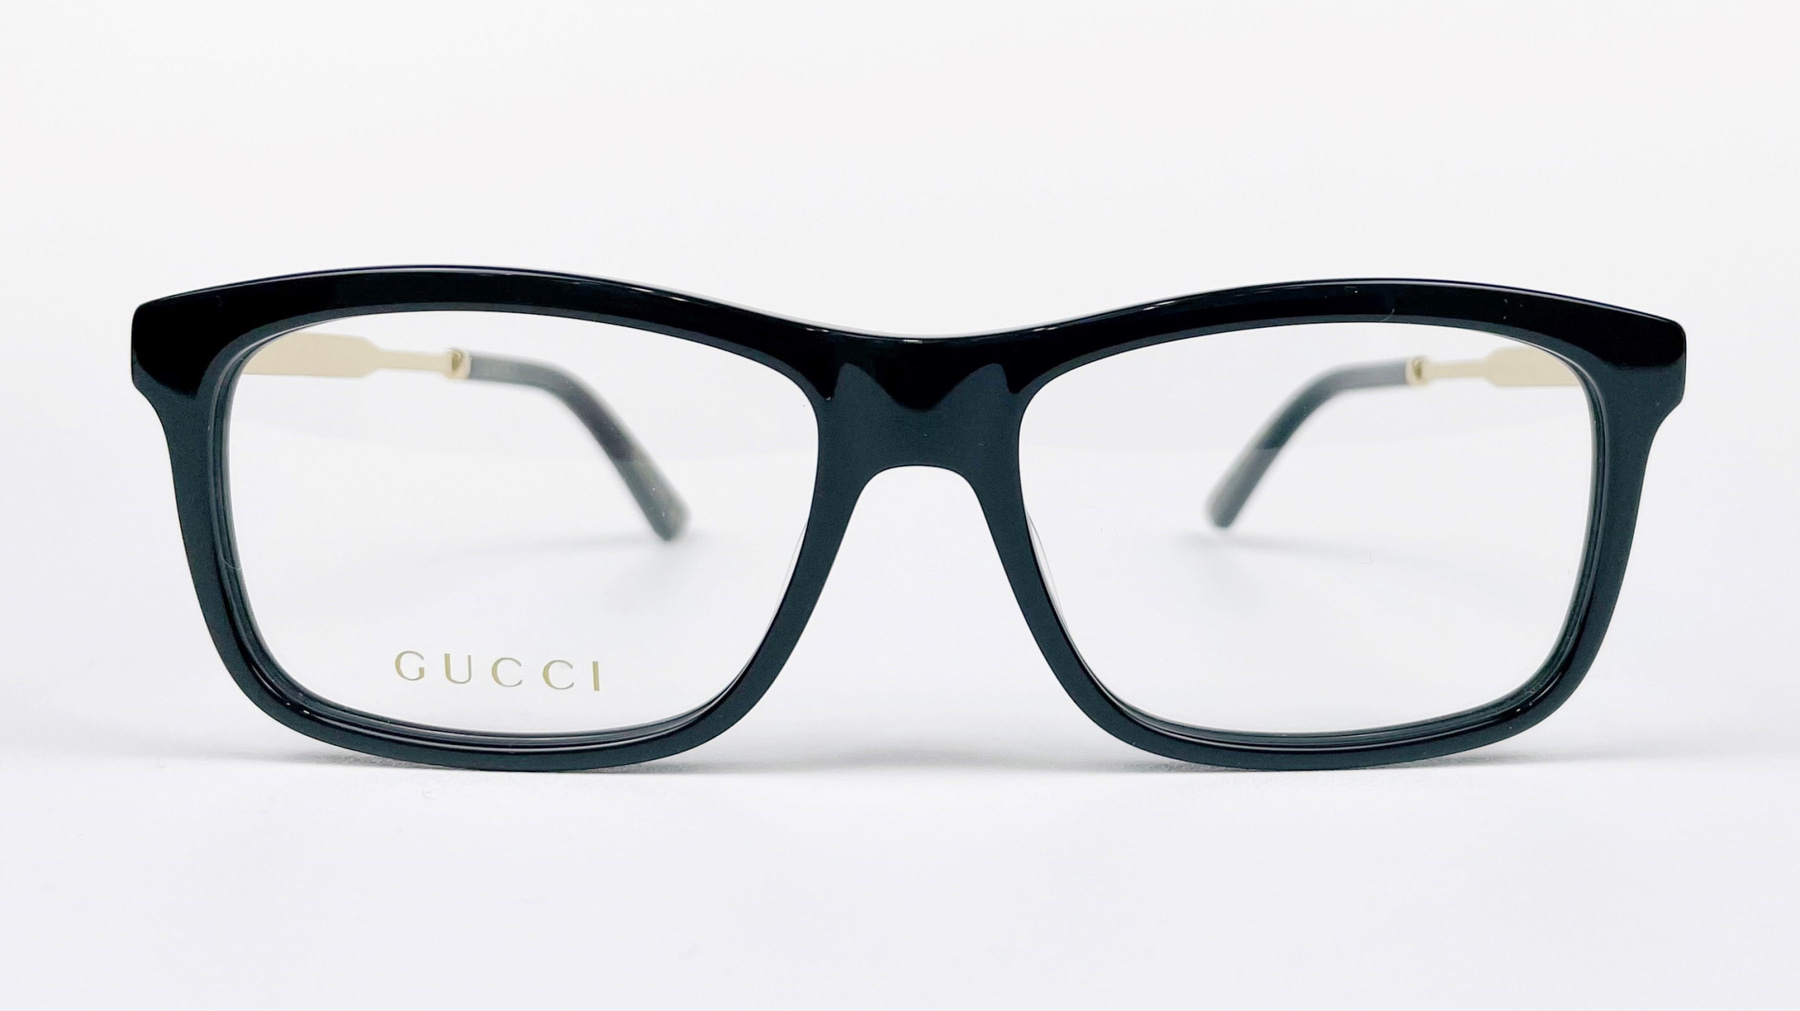 GUCCI GG0302O, Korean glasses, sunglasses, eyeglasses, glasses